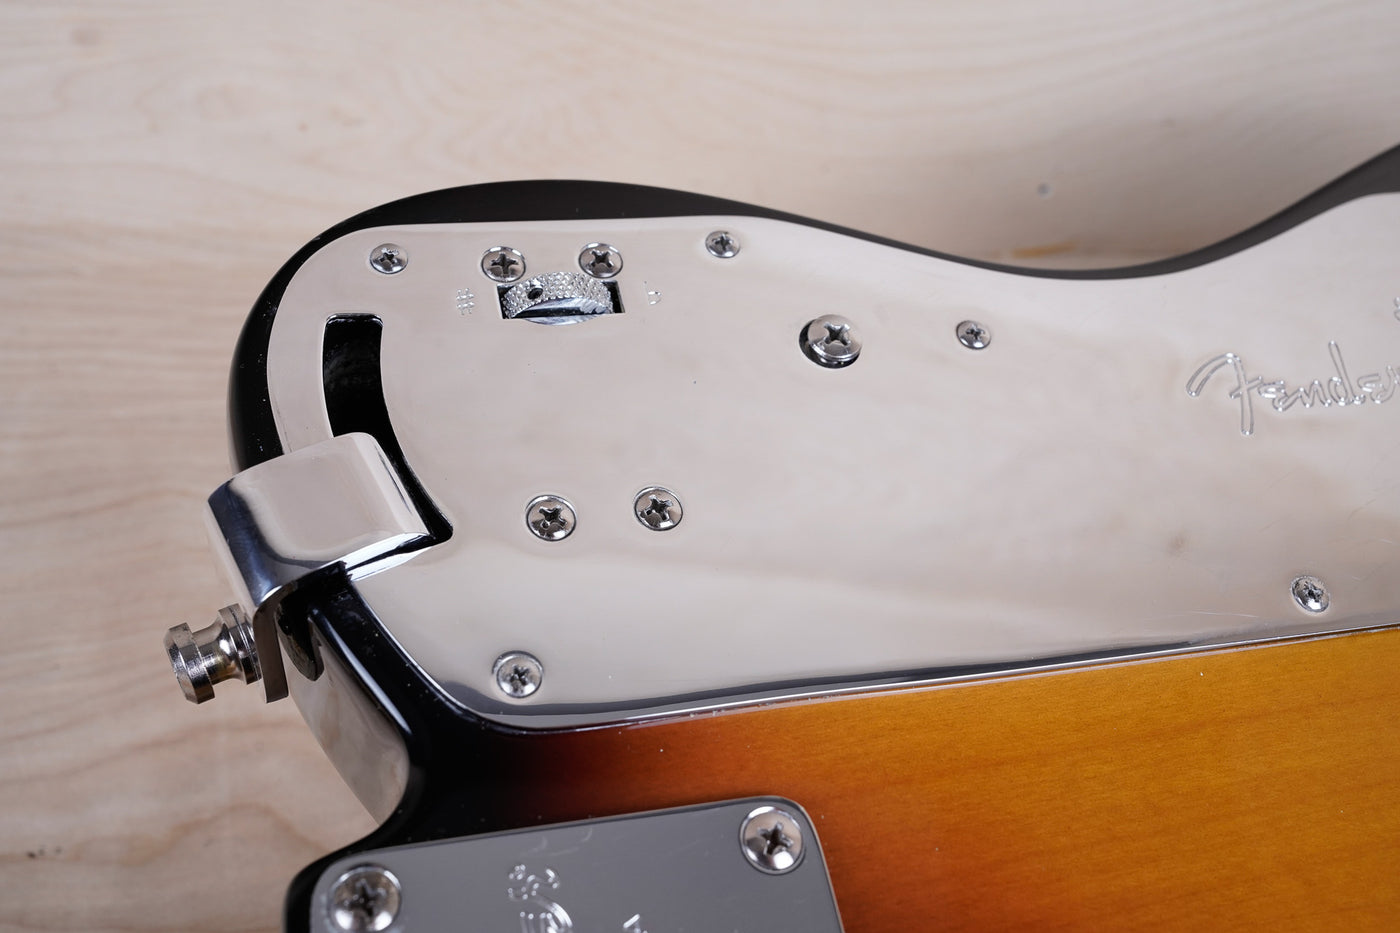 Fender American Nashville B-Bender Telecaster 2005 Sunburst w/ Fender Chainsaw Case